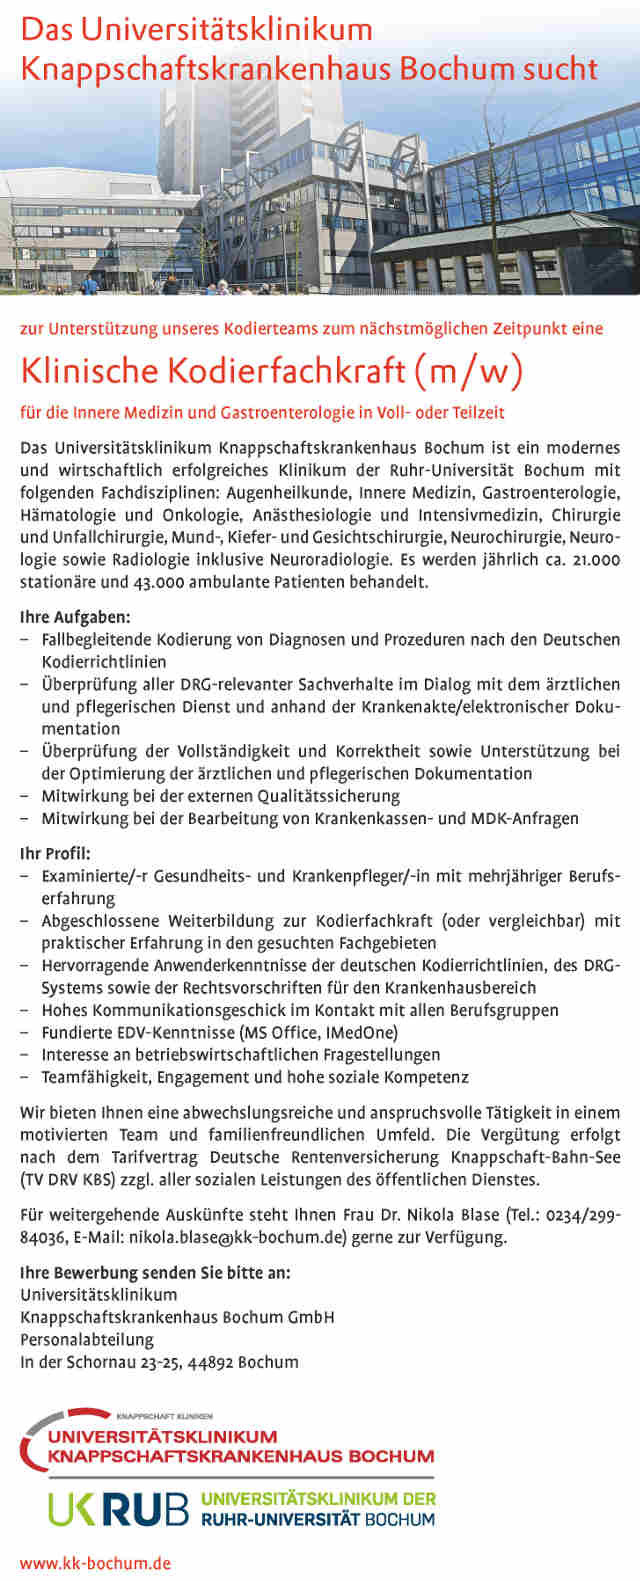 >Universitätsklinikum Knappschaftskrankenhaus Bochum: Klinische Kodierfachkraft (m/w)